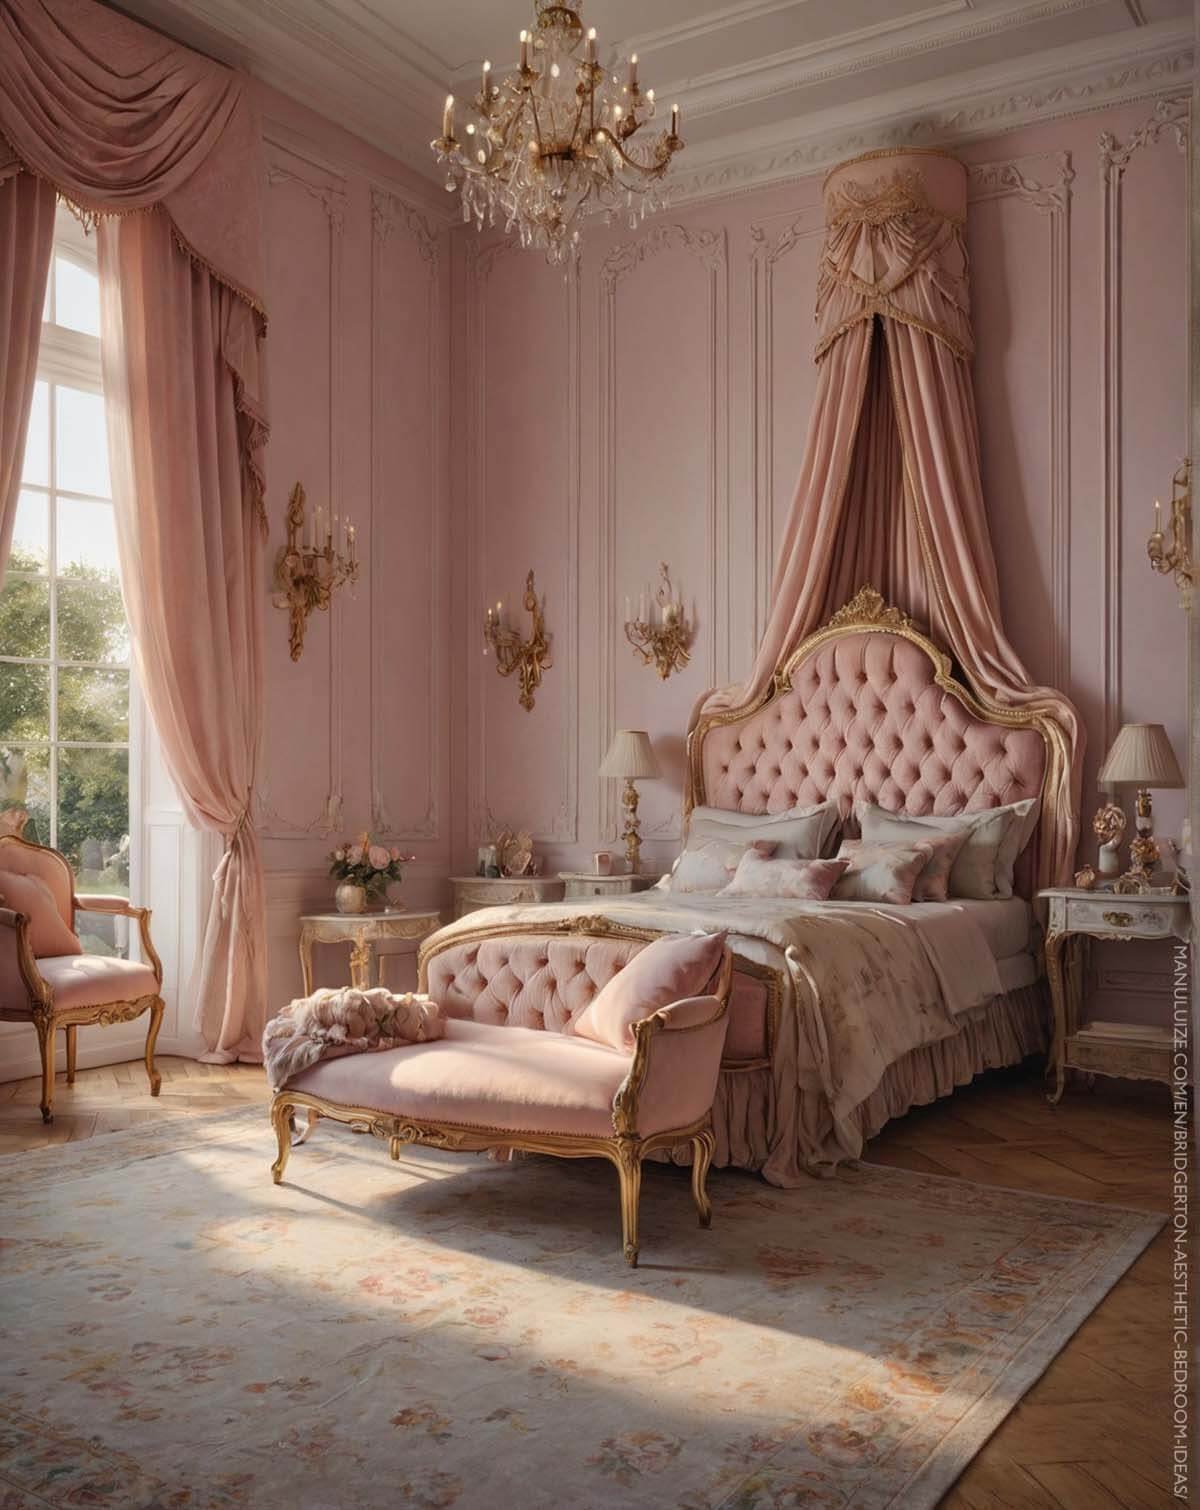 Pink Bridgerton aesthetic bedrooms